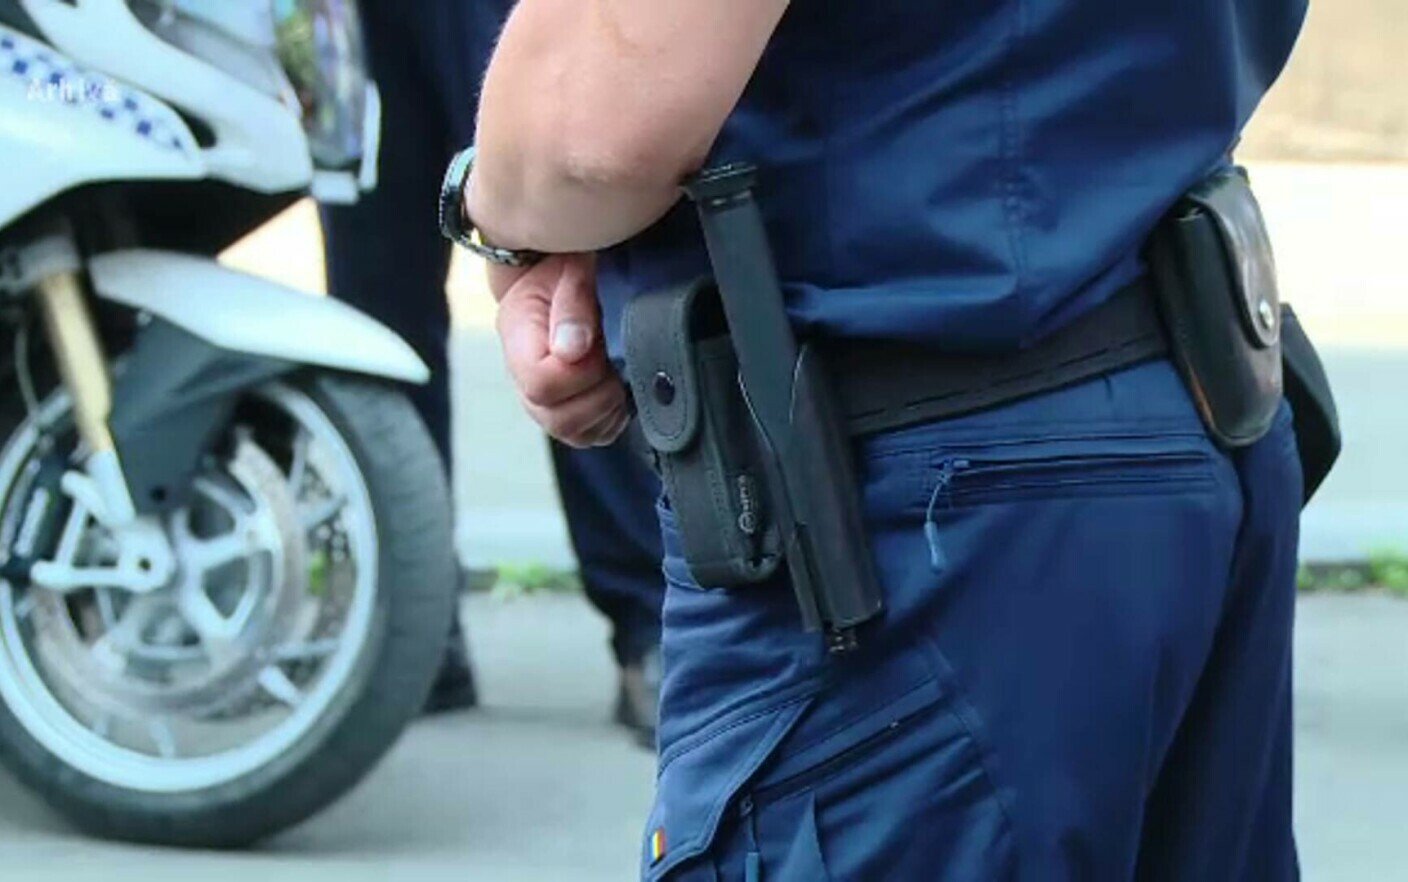  Timişoara – Un poliţist s-a împuşcat în barbă cu arma din dotare, în locuinţa sa